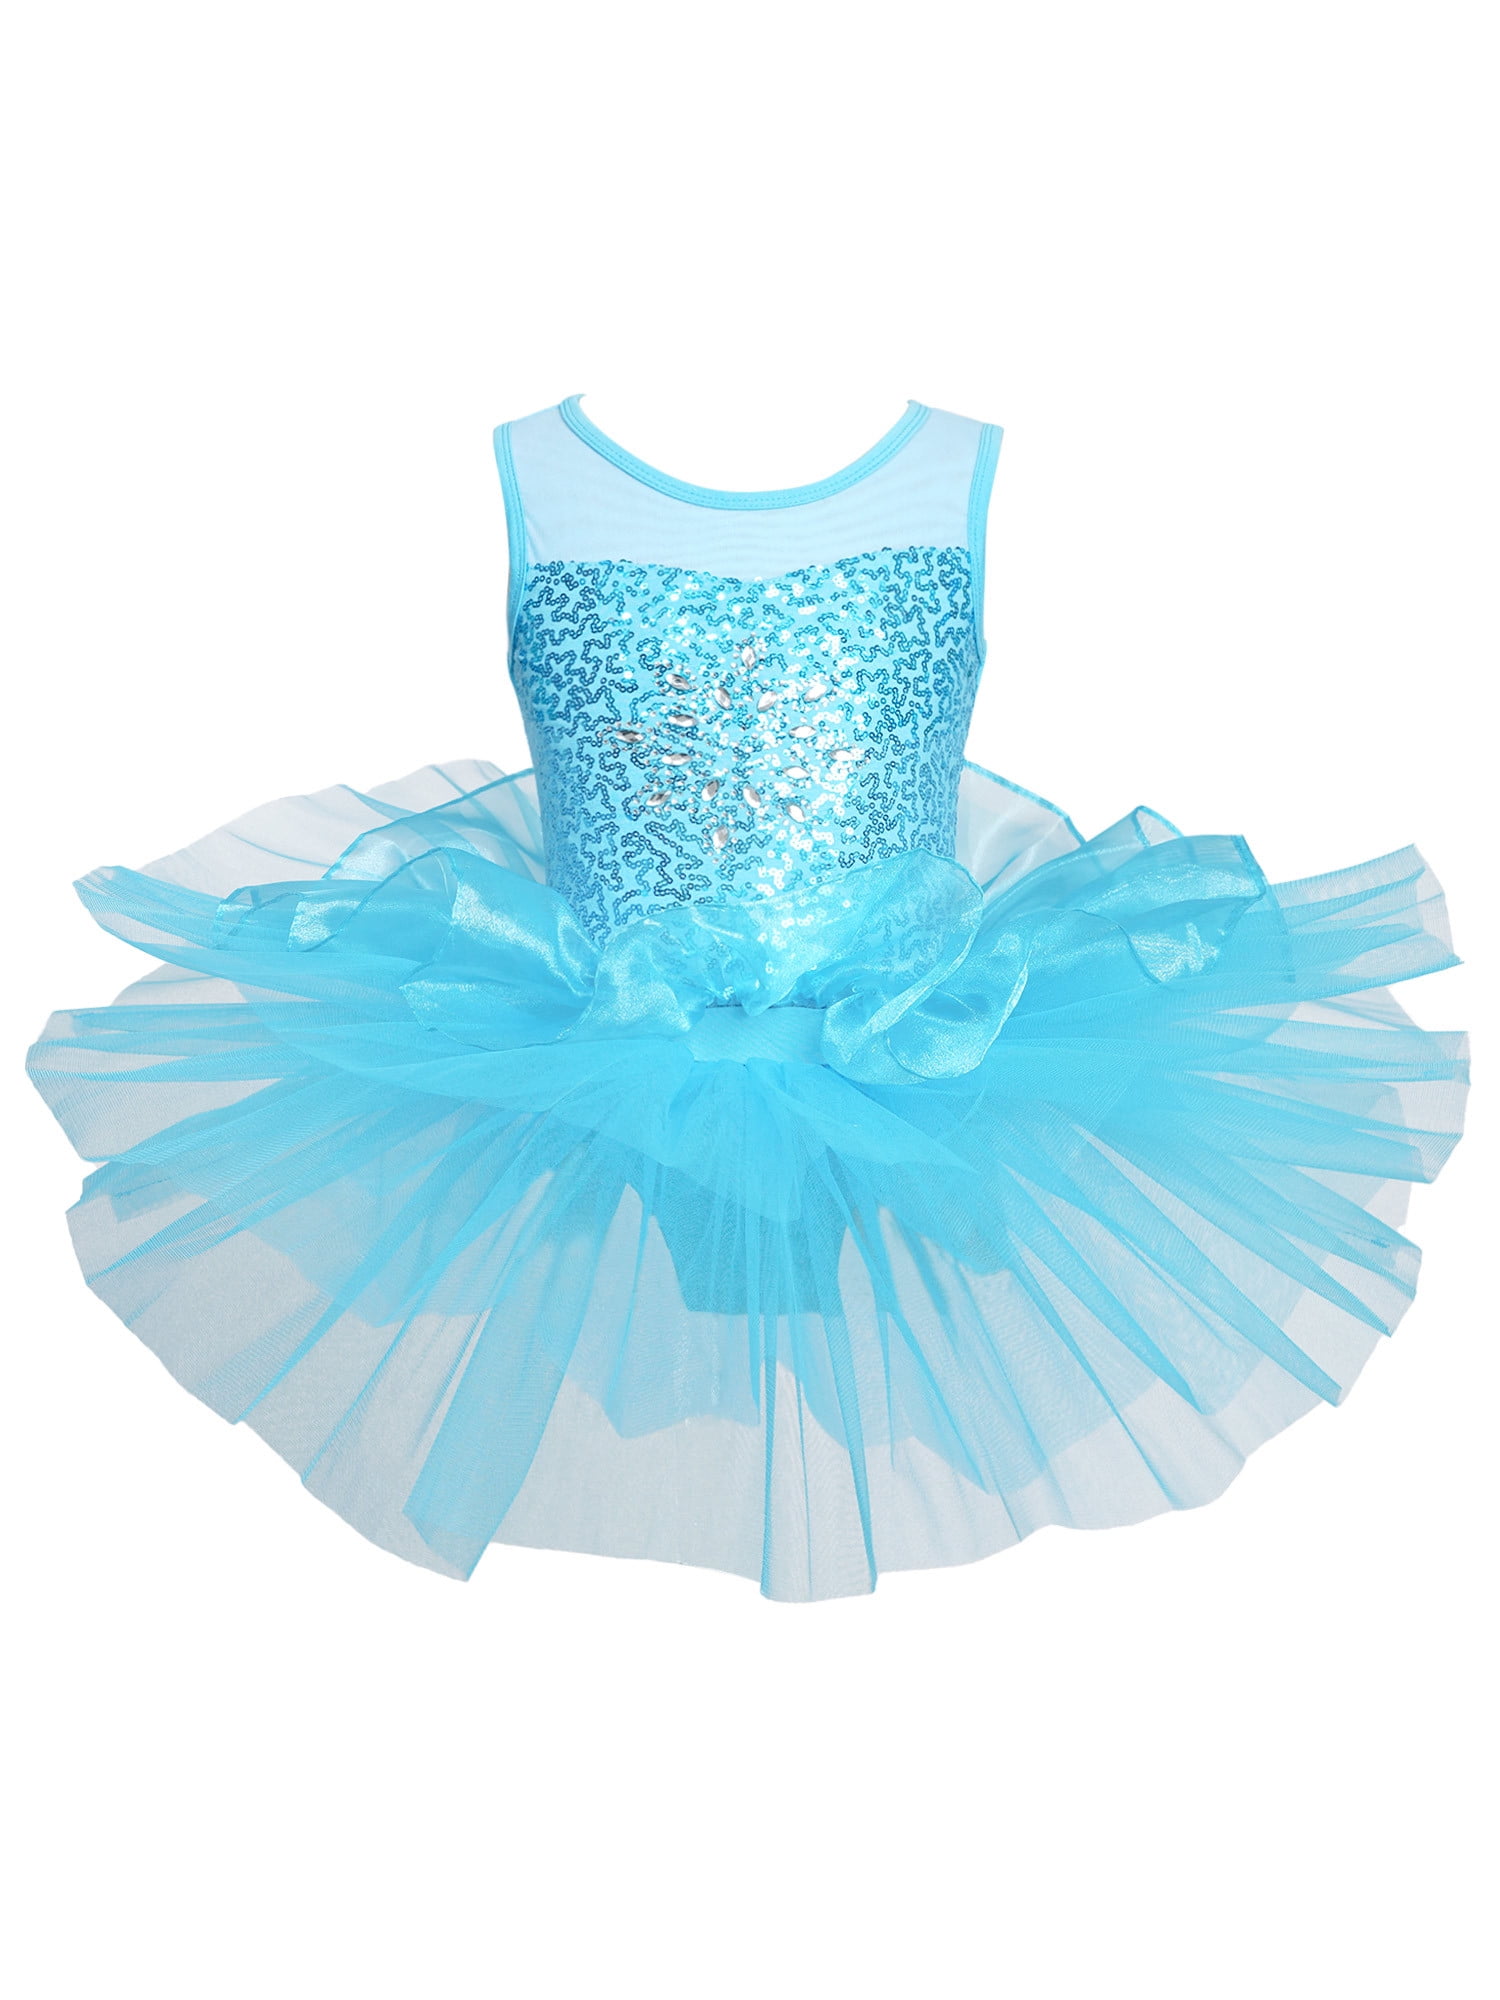 YIZYIF Big Little Girls Ballet Dance Tutus Ballerina Sleeveless Dance Leotard Shiny Sequins Tutu Dress Dancewear Blue 3T 8c8b8f05 3dfb 454b b592 41c81f393b16.ff746c74c58d8734fc1a39b2893dbfe3